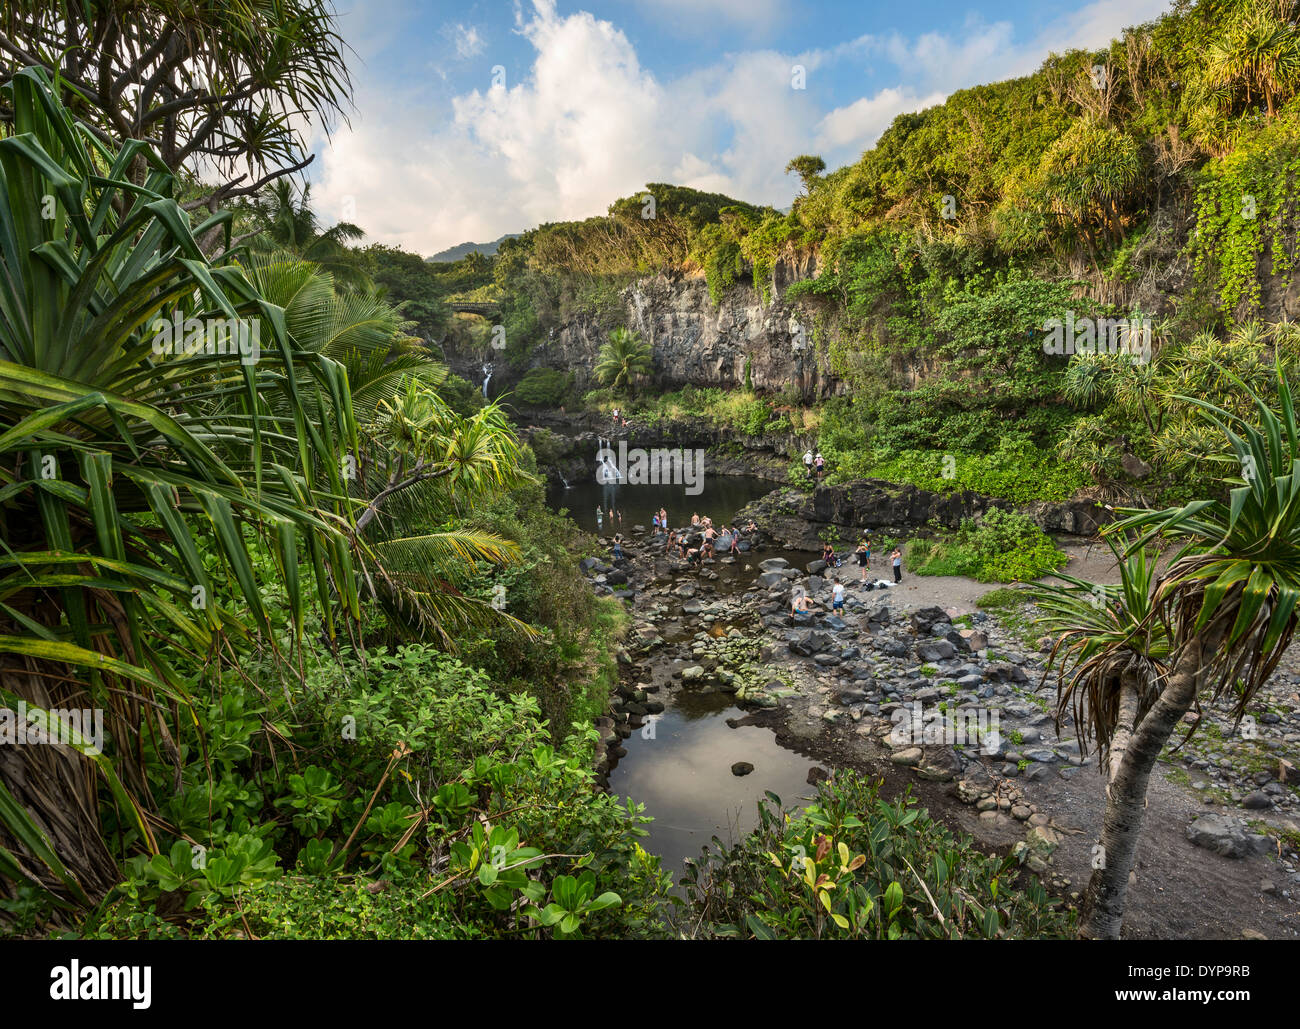 La bellissima scena di sette piscine sacra di Maui. Foto Stock